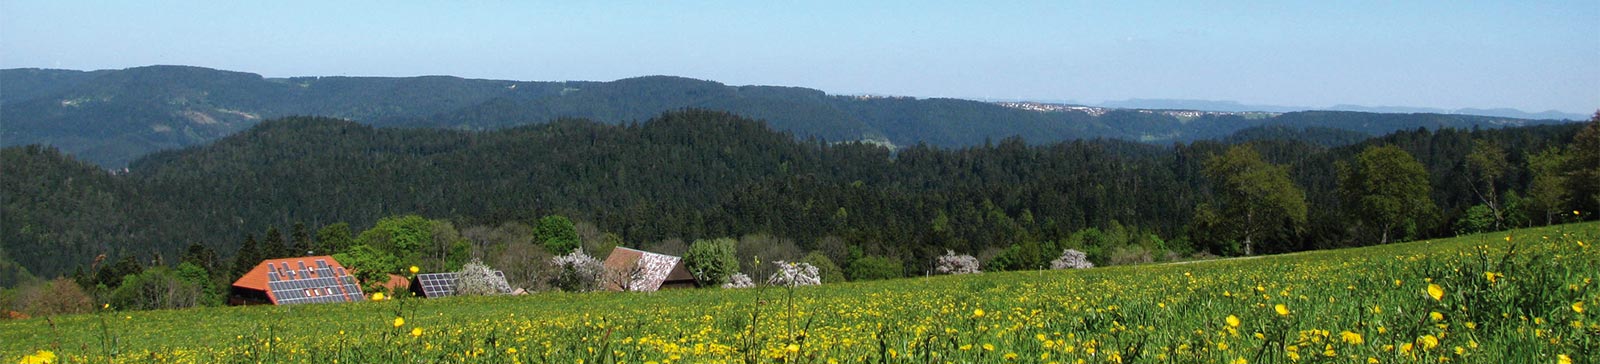 Schwarzwaldpanorama, Ausblick über den ganzen Simonshof, Wiese mit gelben Blumen im Vordergrung